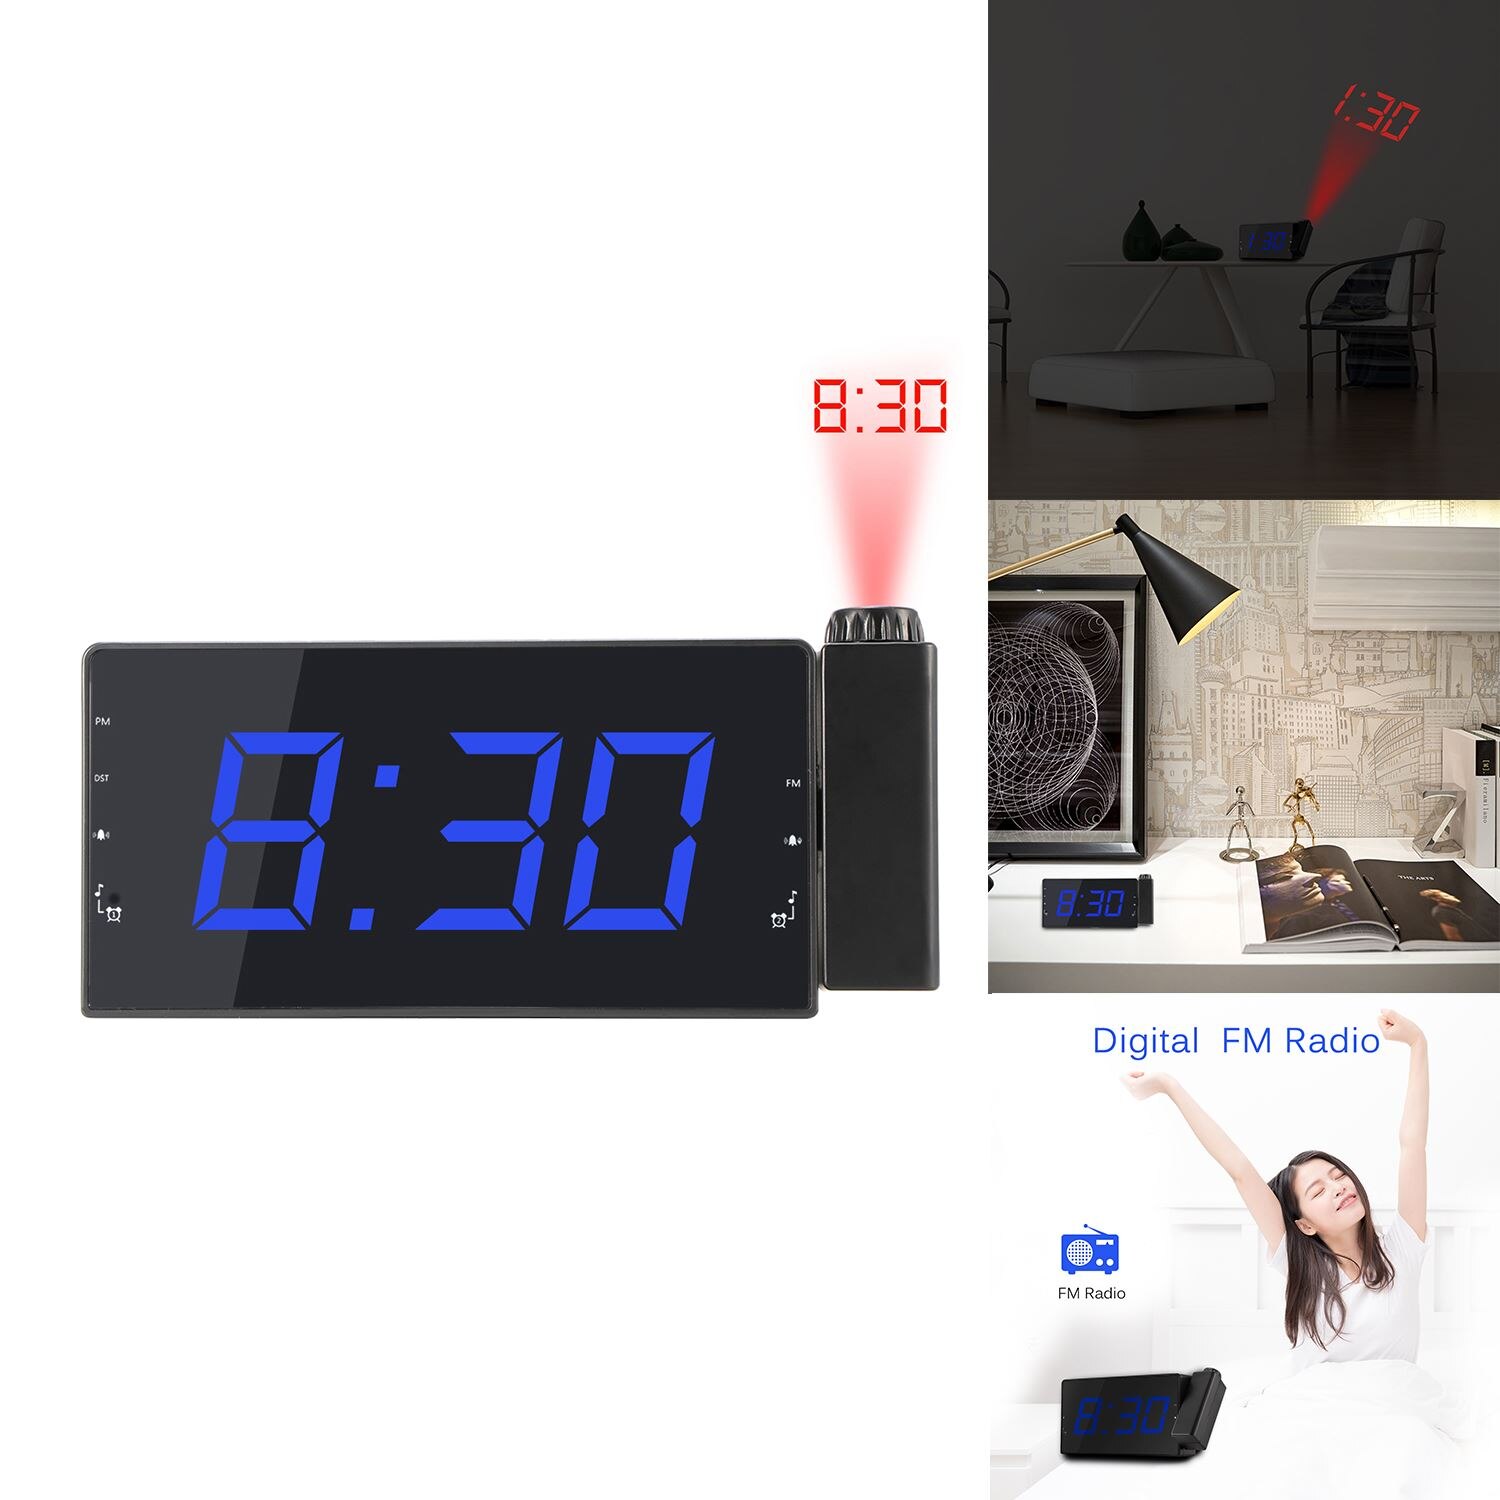 Usb Projectie Wekker Led Display Tijd Digitale Wekker Met Draaibare Projector Dual Alarm Fm Radio Snooze Functie